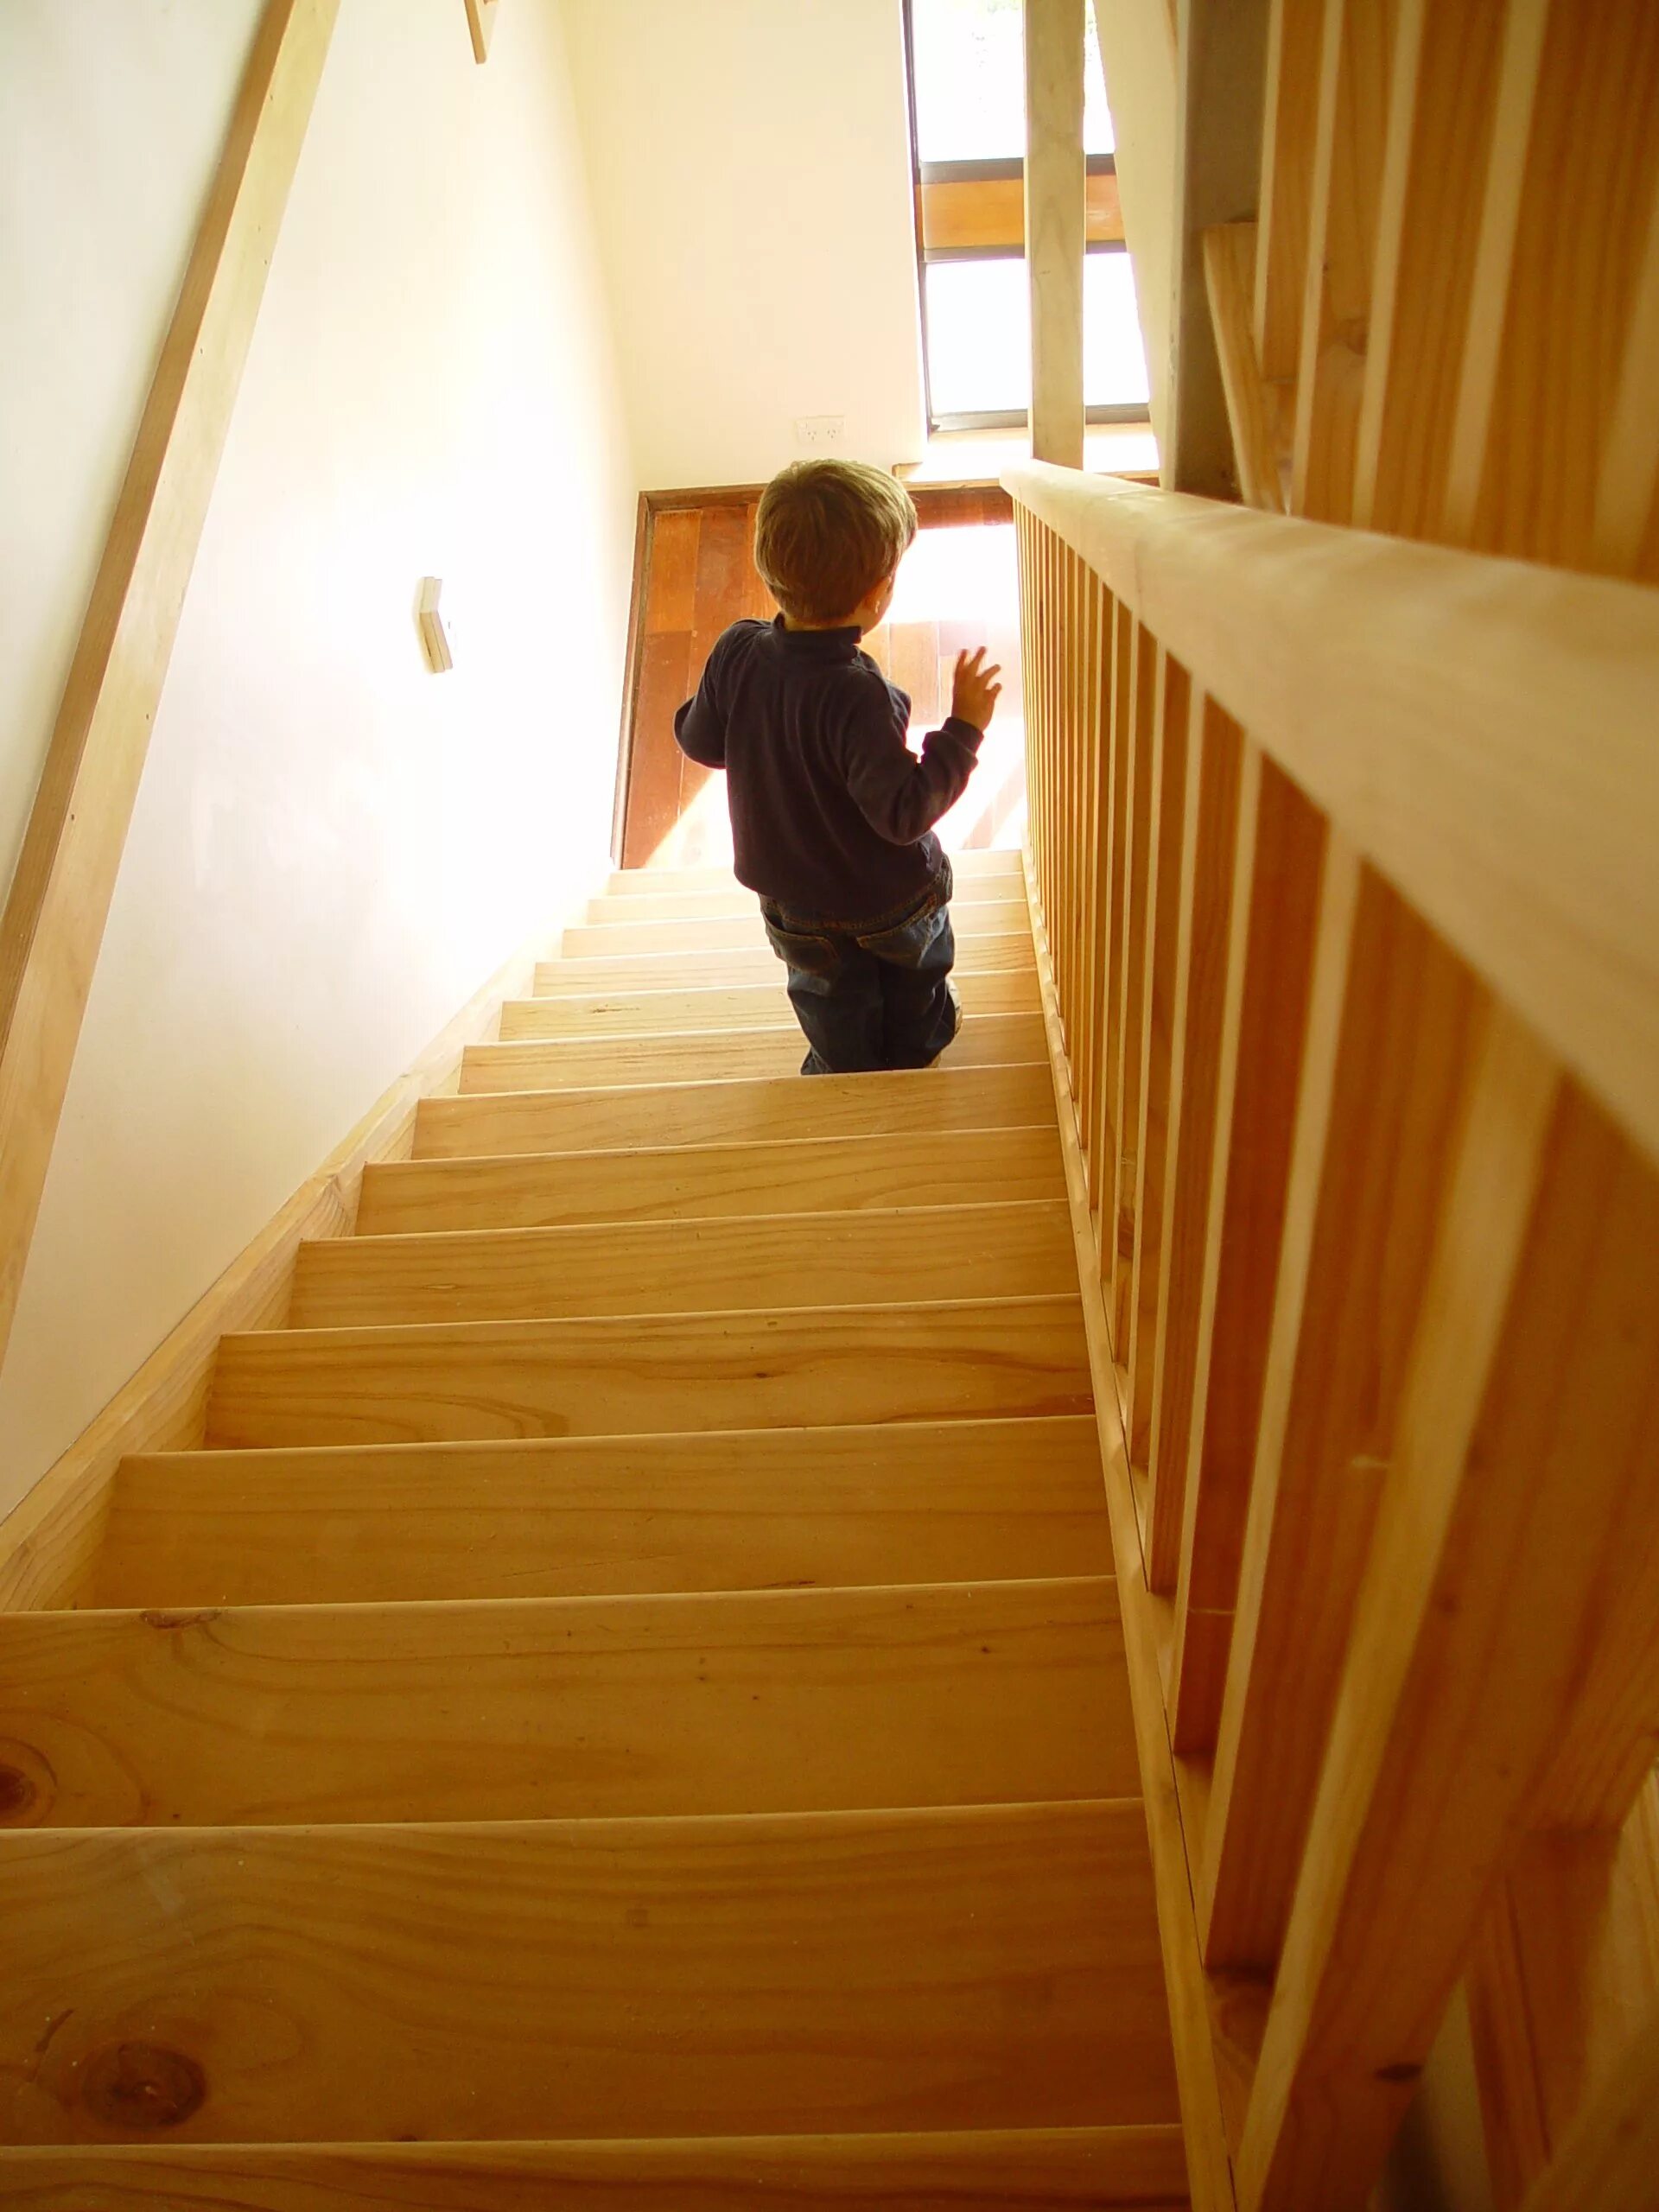 Подняться по деревянной лестнице. Лестница для детей. Лестница деревянная детская. Фотосессия на лестнице в доме. Дошкольник на лестнице.